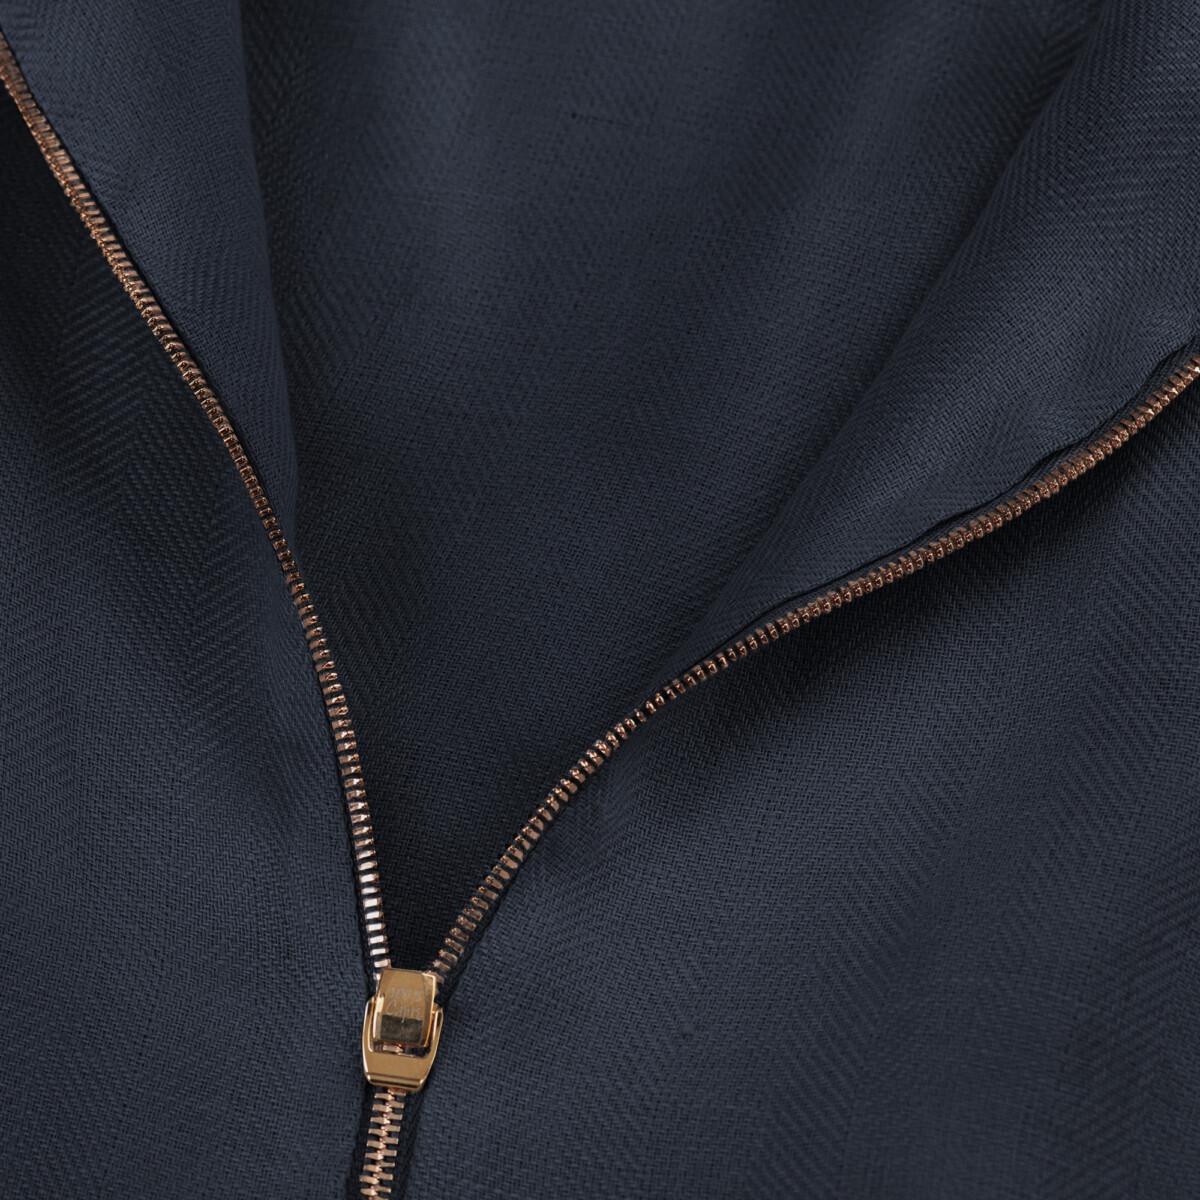 Tuta Zip for woman  100% Capri blue linen jumpsuit detail